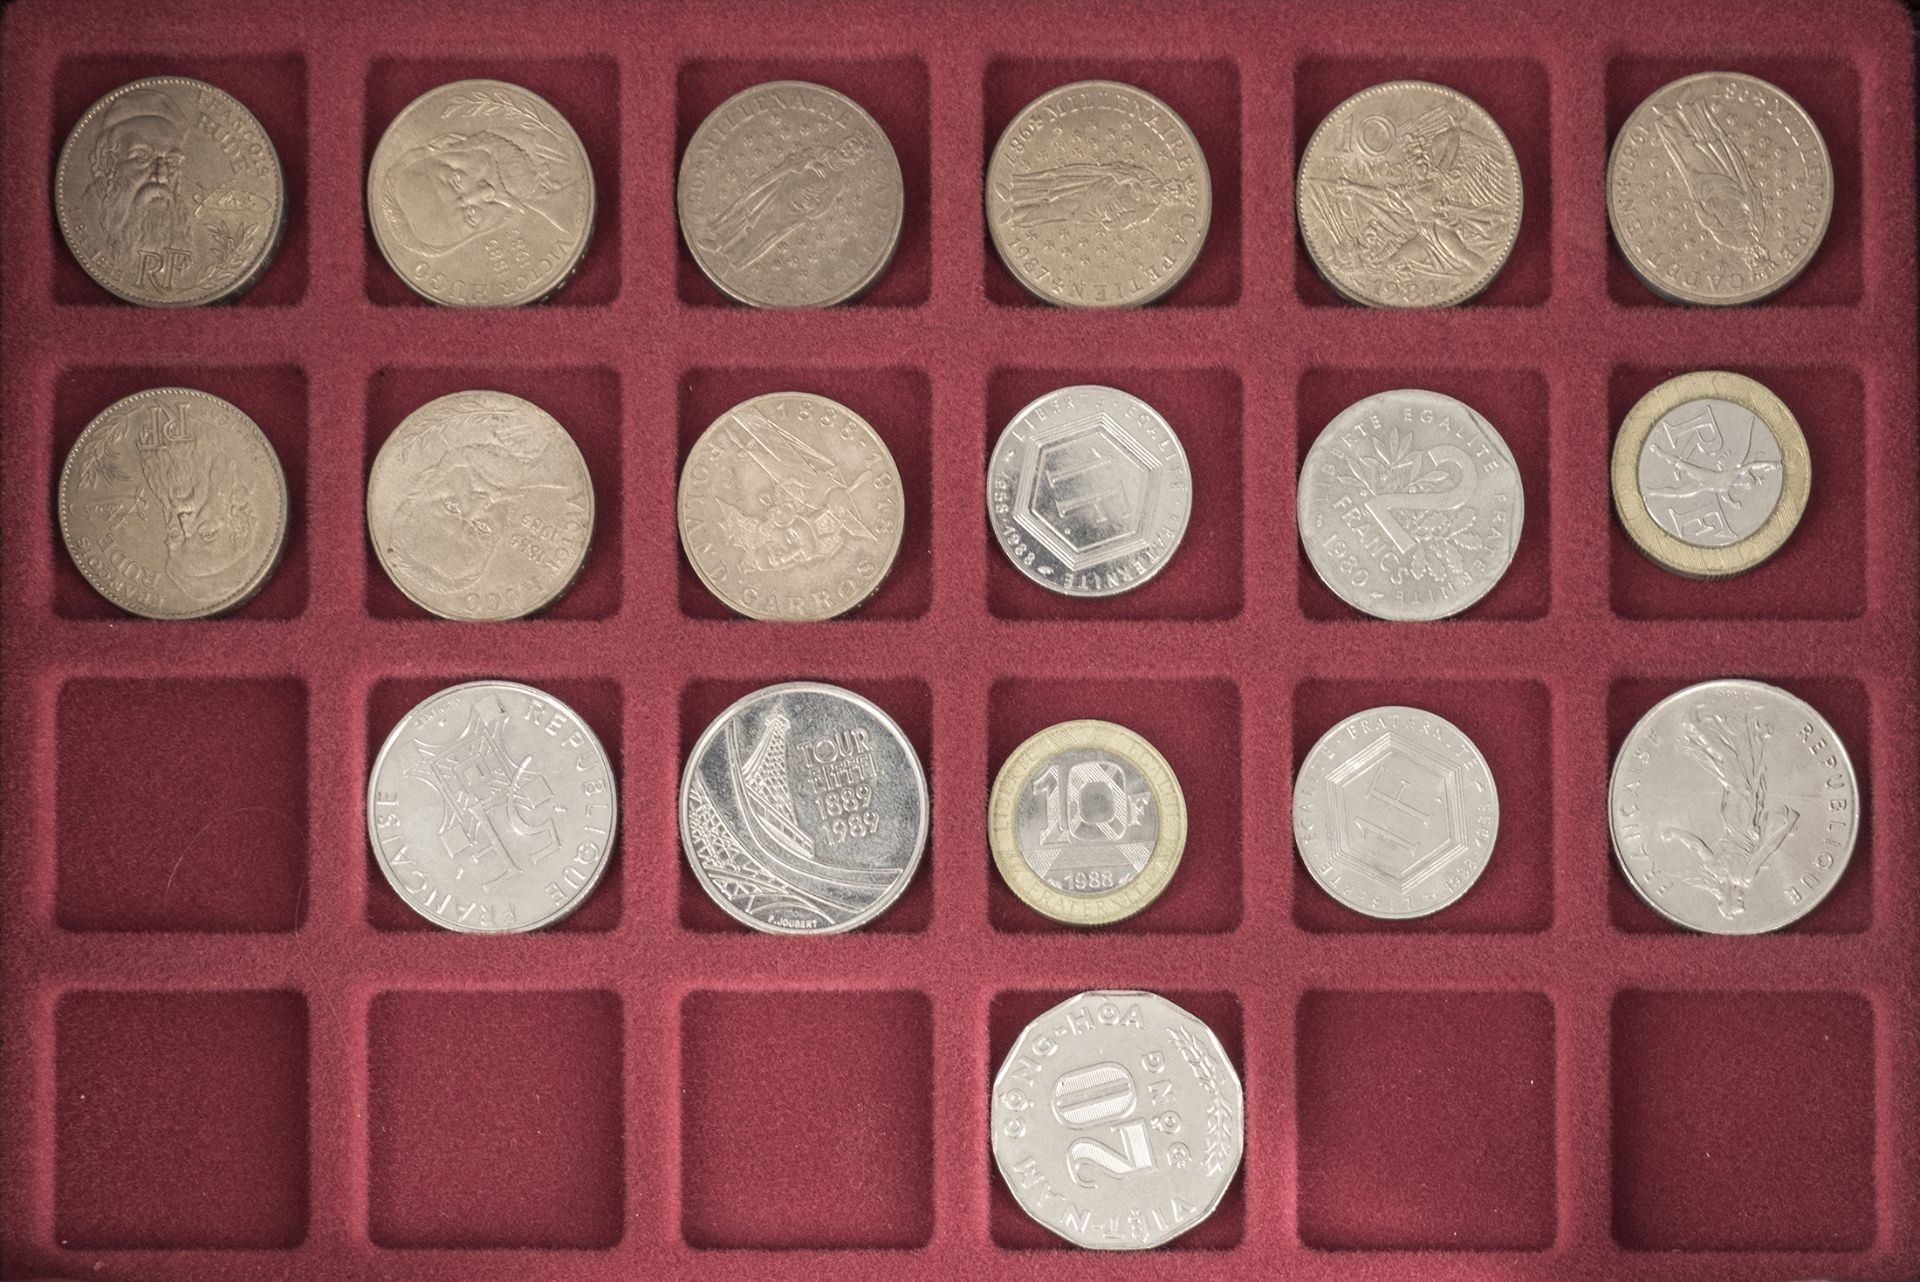 Lot Münzen aus Europa, dabei Polen, Griechenland, Frankreich und Türkei. Insgesamt 70 Münzen in